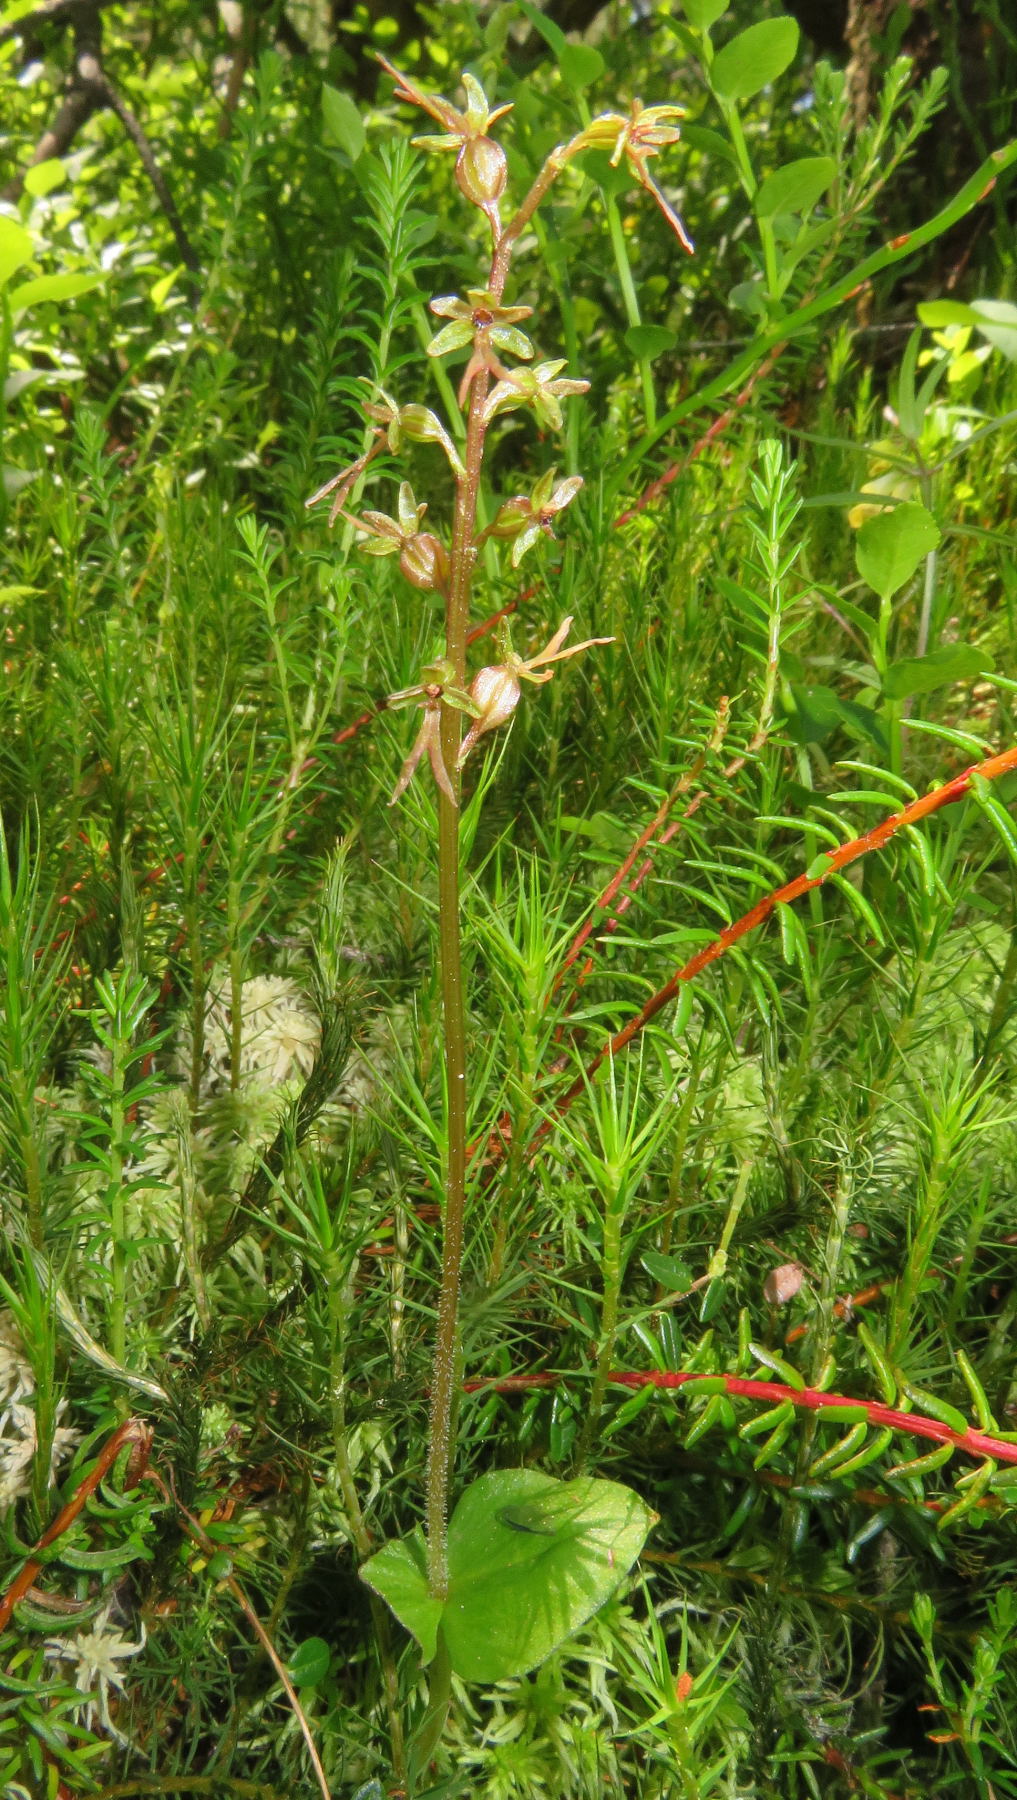 Bradáček srdčitý (Listera cordata) roste na rašeliništi Myší kout. Foto Stanislav Wieser